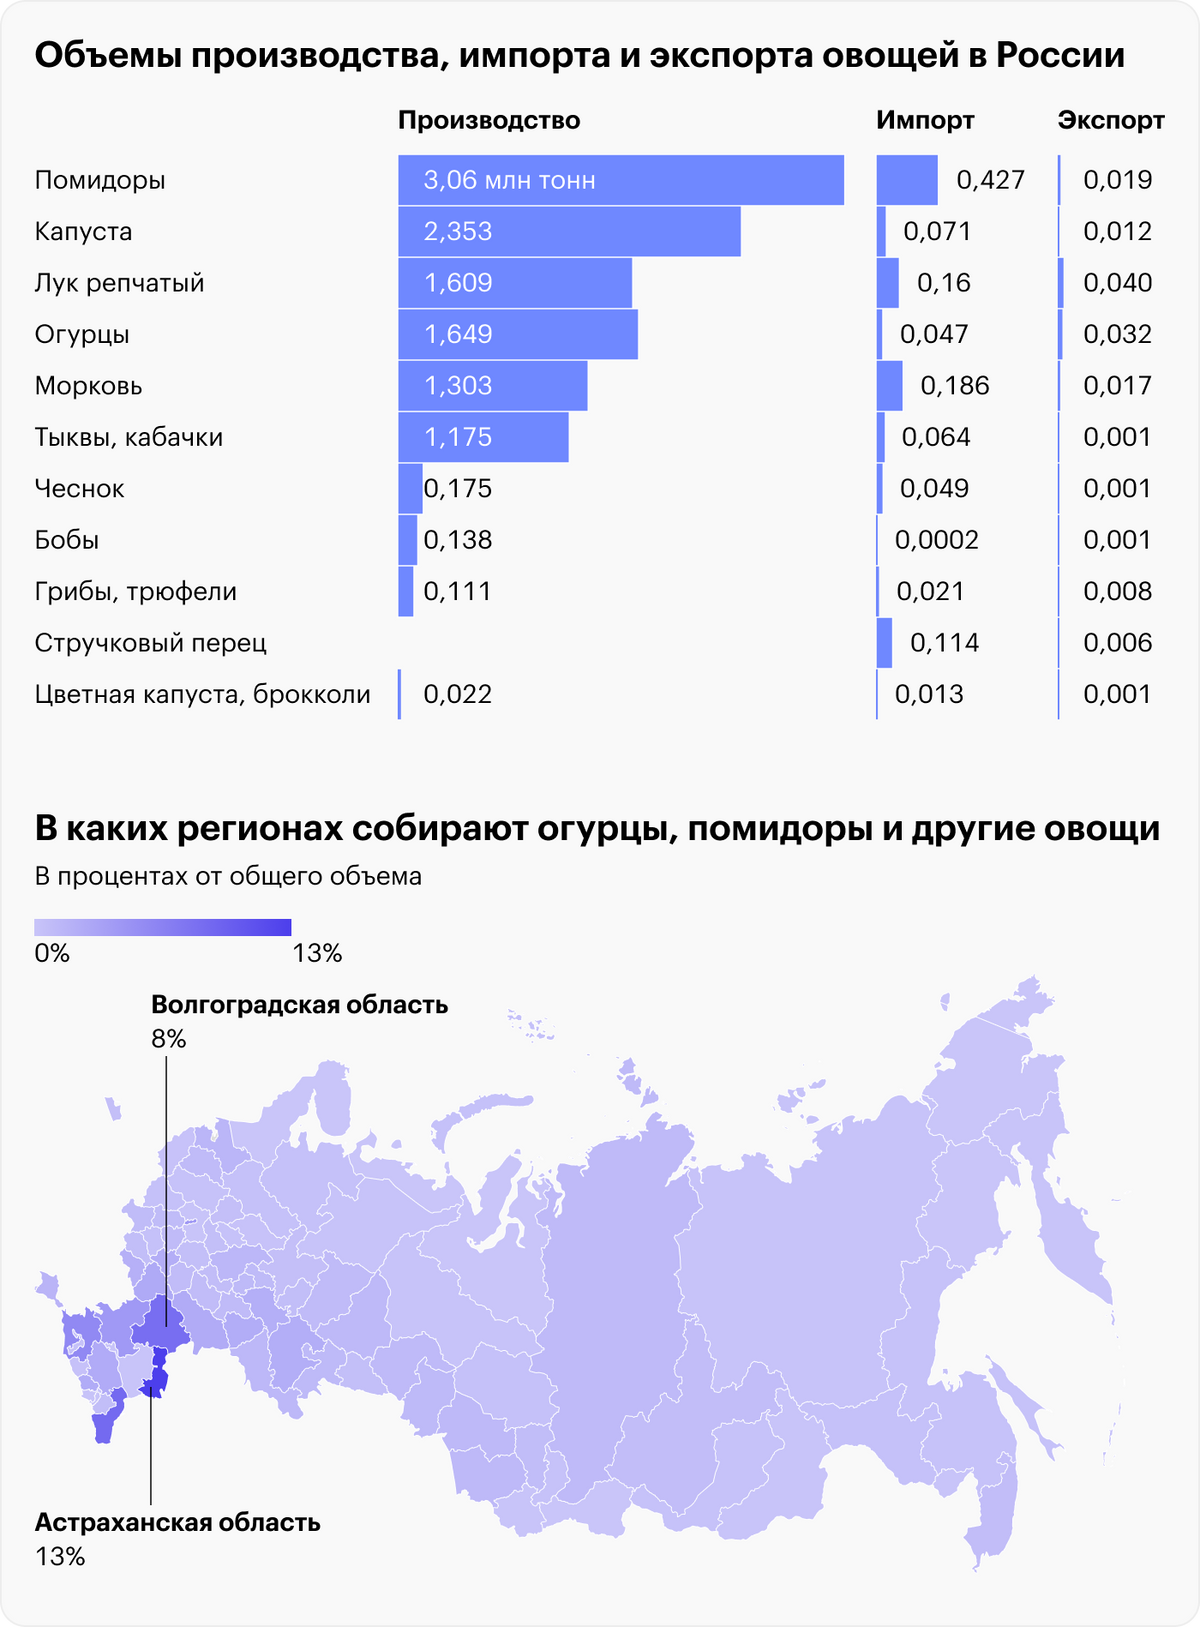 Источники: FAO, Производство, импорт и экспорт овощей в России, 2021, Росстат, Сбор овощей по регионам России. На графике могут быть отображены не все регионы из-за отсутствия данных